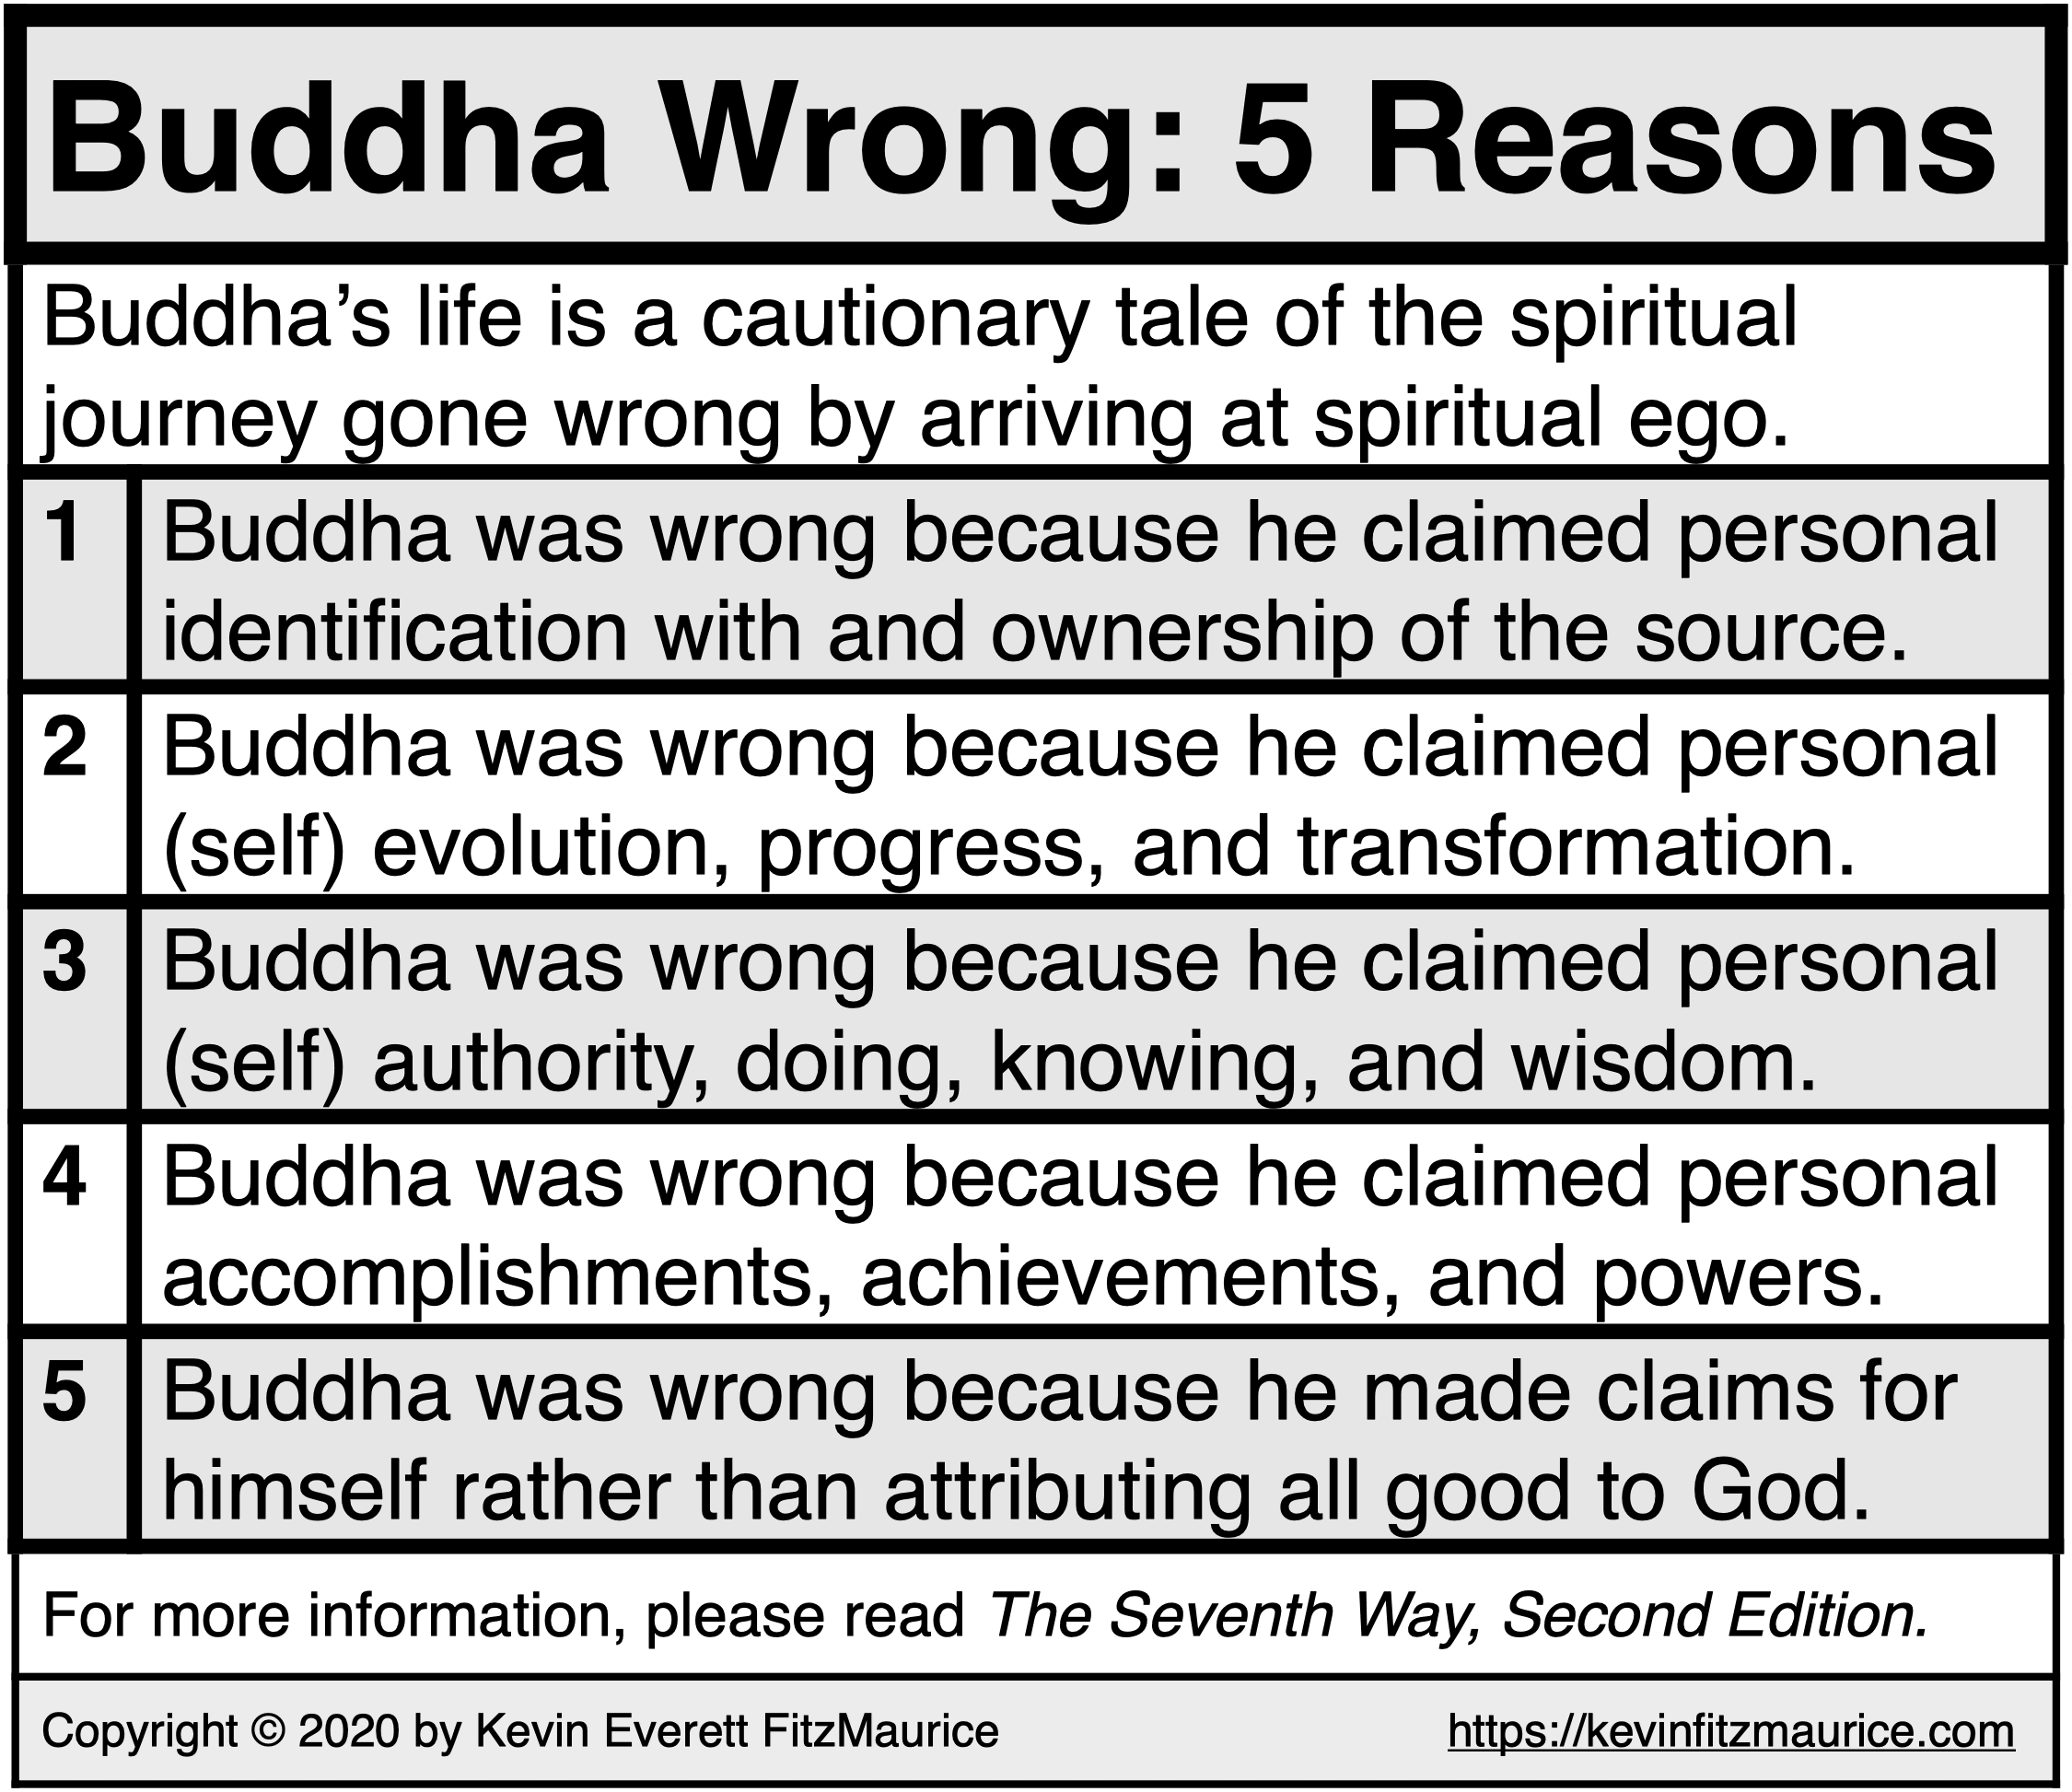 Buddha Wrong: 5 Reasons